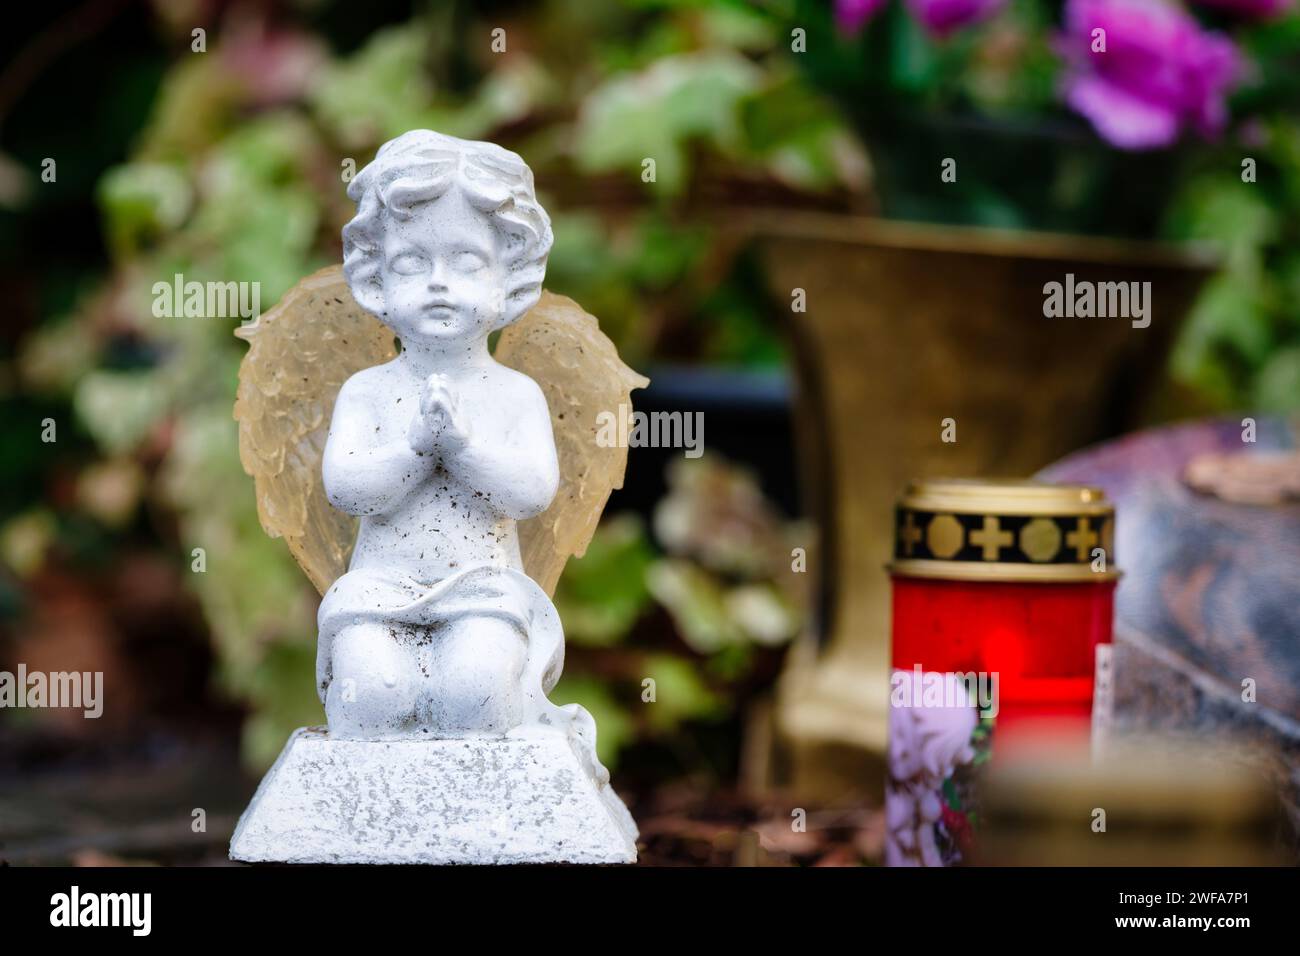 Eine kleine weiße Engelsfigur kniet betend auf einem Grab vor einer Grabkerze und einem Grabstein sowie Blumen im verschwommenen Hintergrund Stockfoto